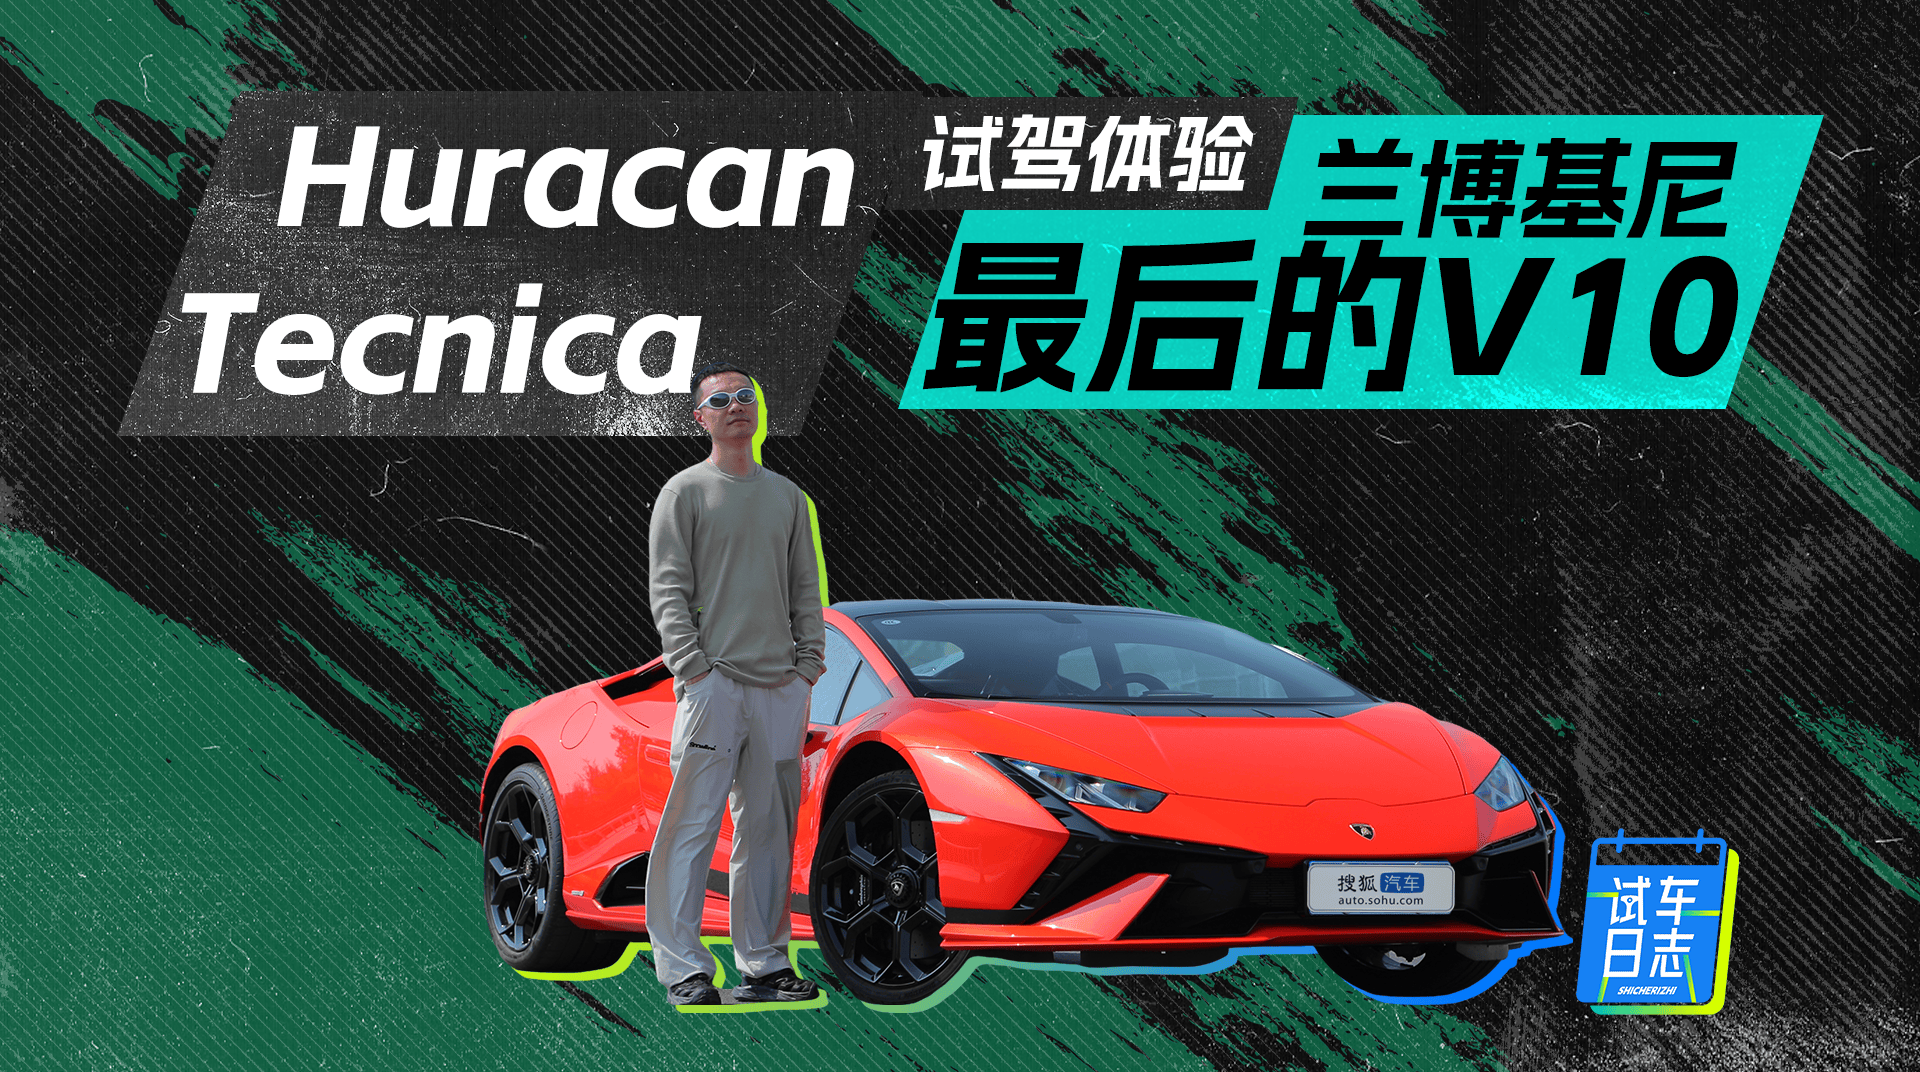 最终V10自吸试驾兰博基尼Huracán Tecnica_搜狐汽车_ Sohu.com